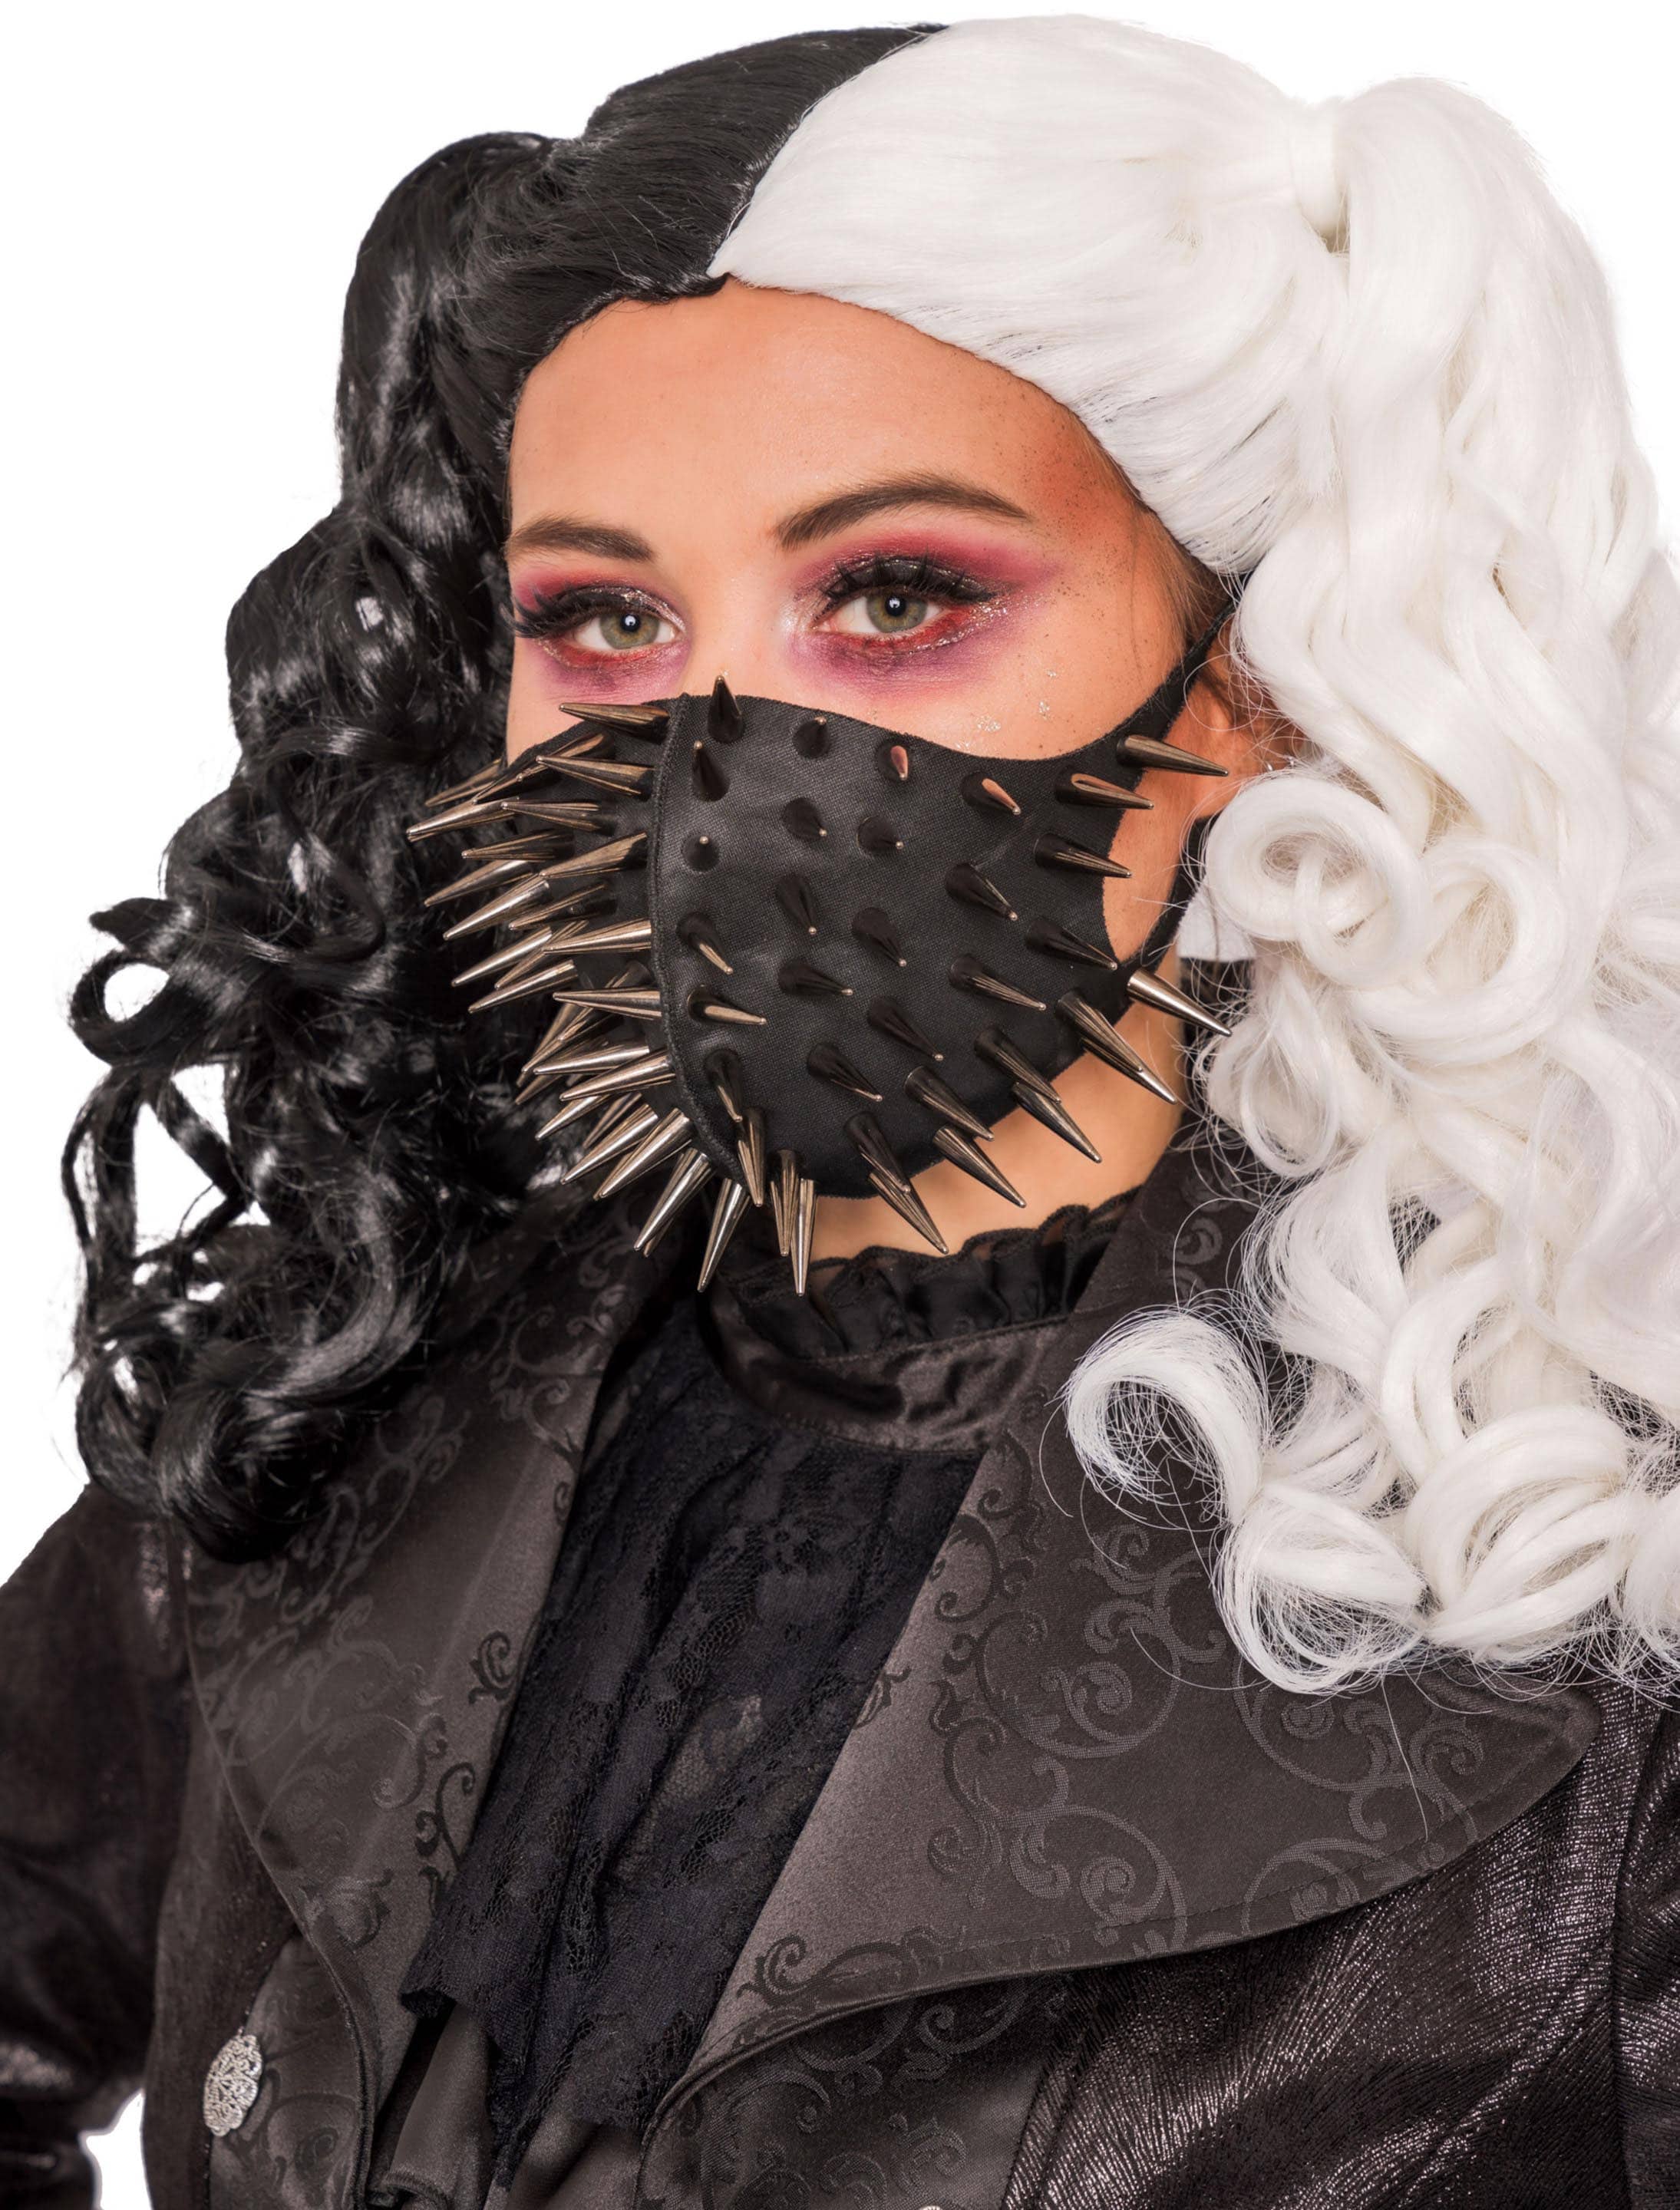 Maske Steampunk schwarz mit Nieten grau HIER kaufen » Deiters